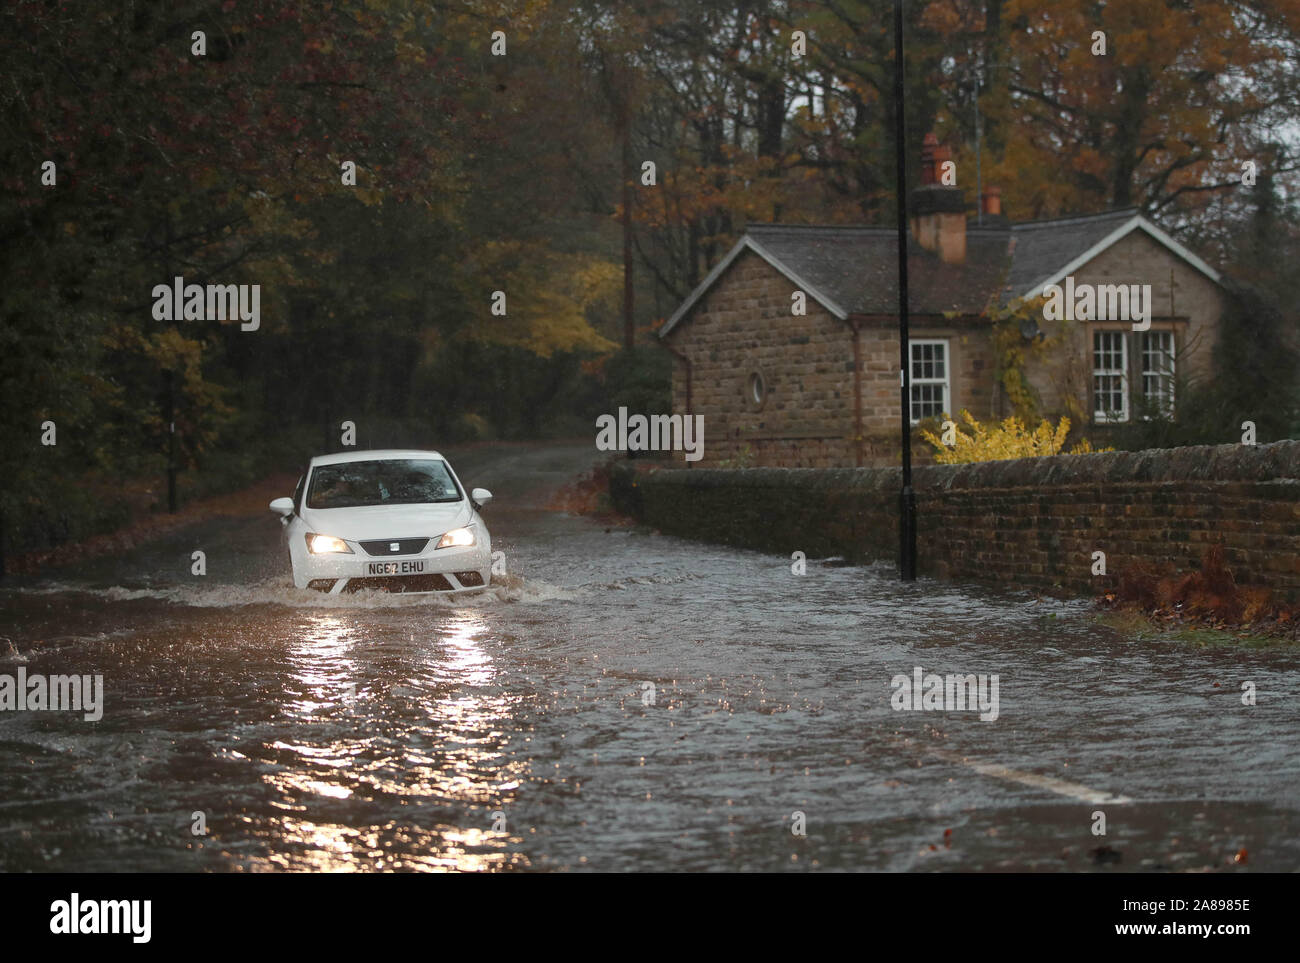 Une voiture passe à travers une route inondée à Dore, Derbyshire après des pluies torrentielles dans la région. Banque D'Images